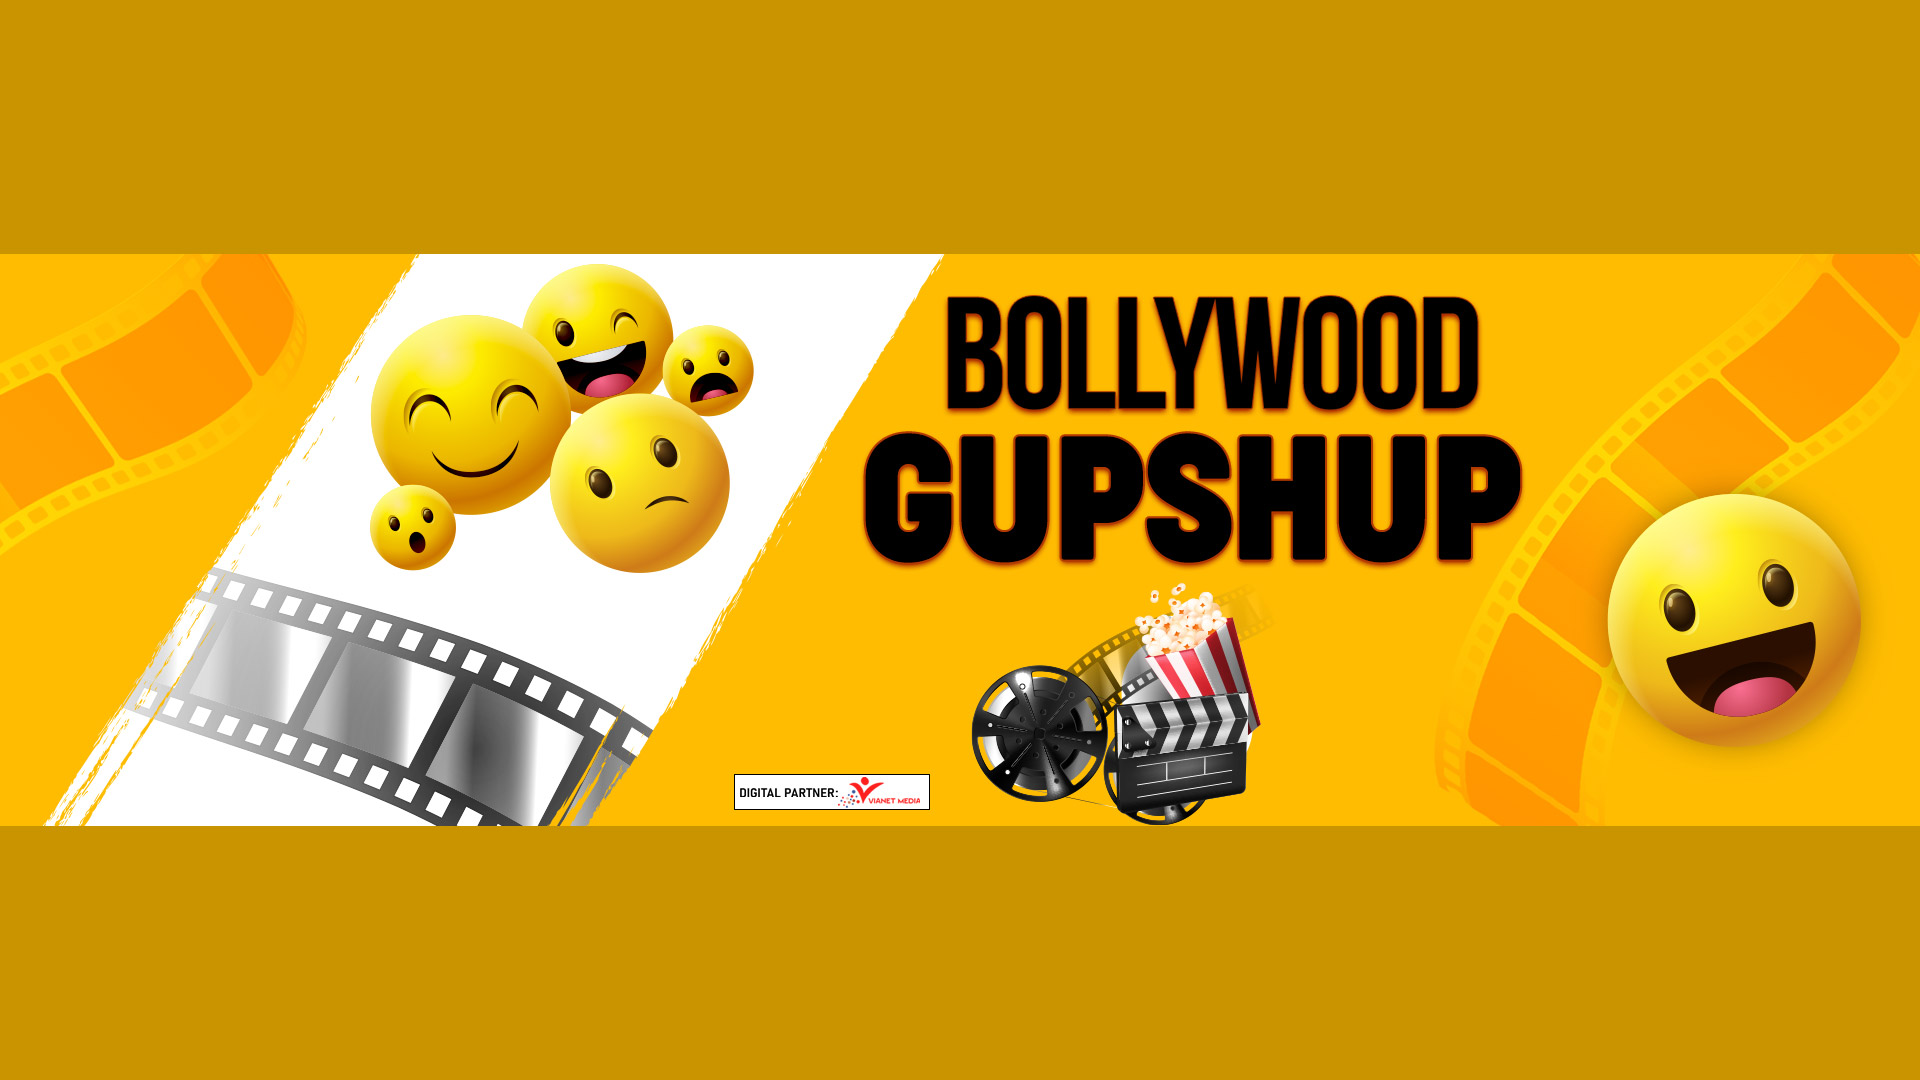 Bollywood Gupshup